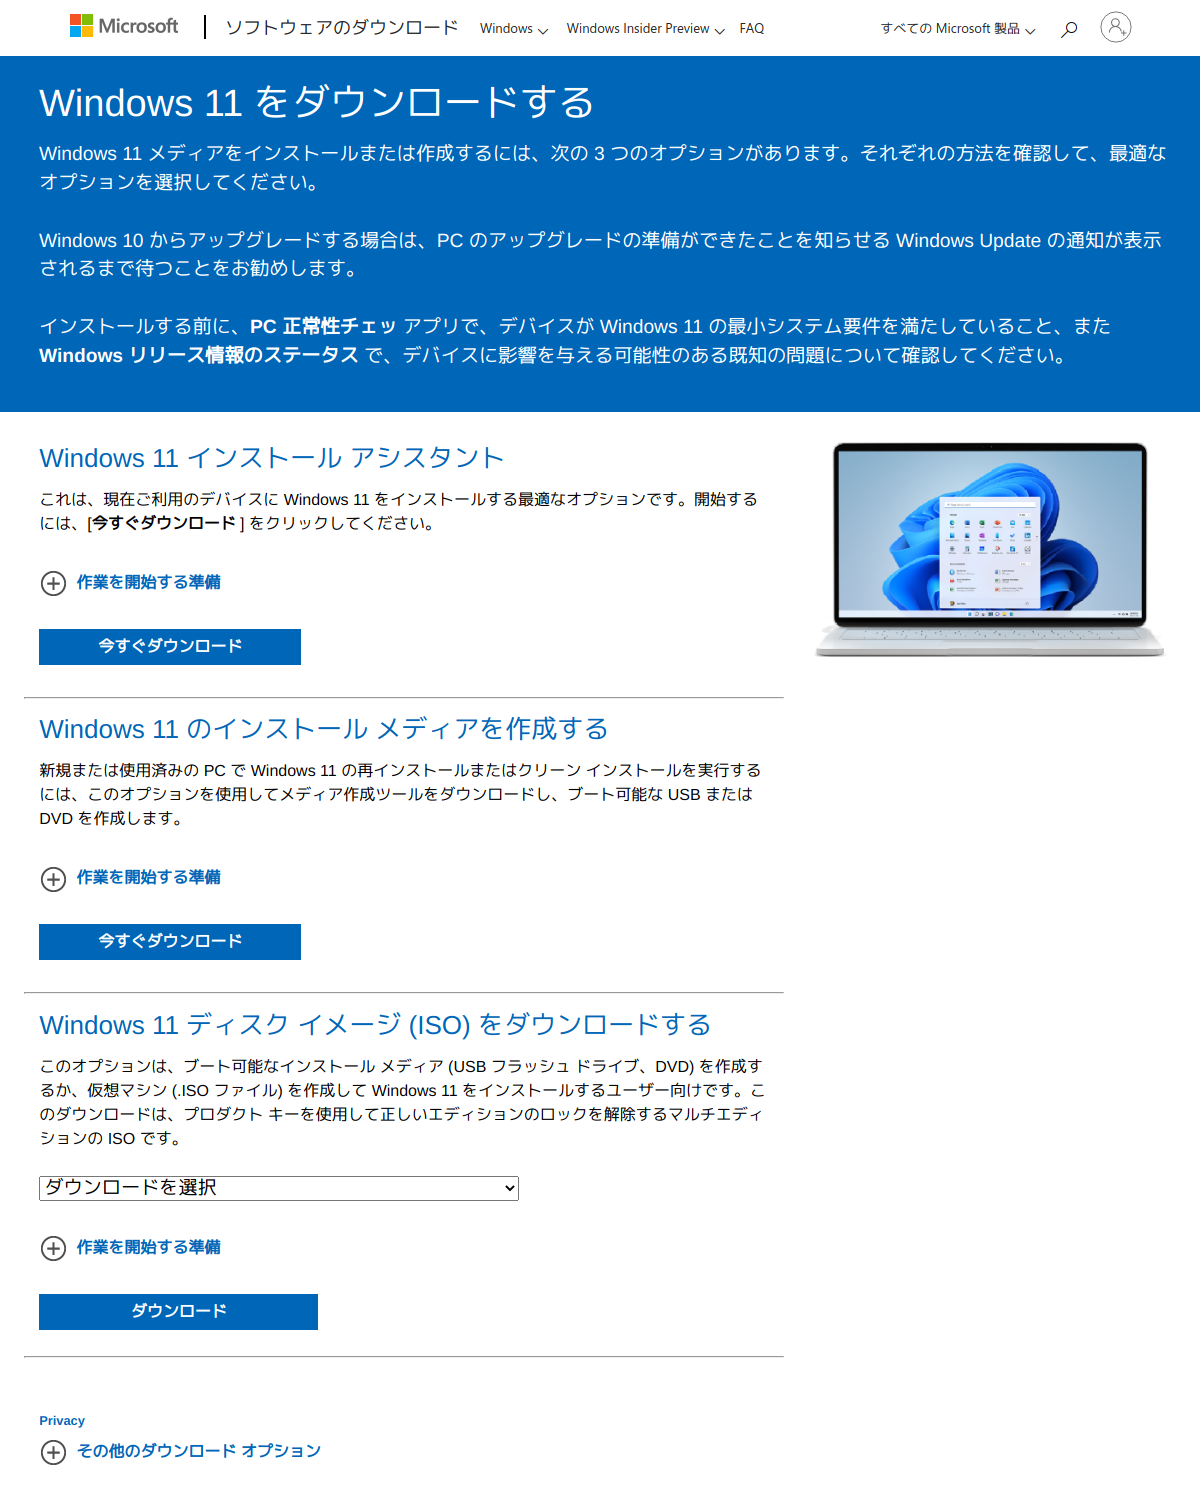 Windows 11 ダウンロードページ